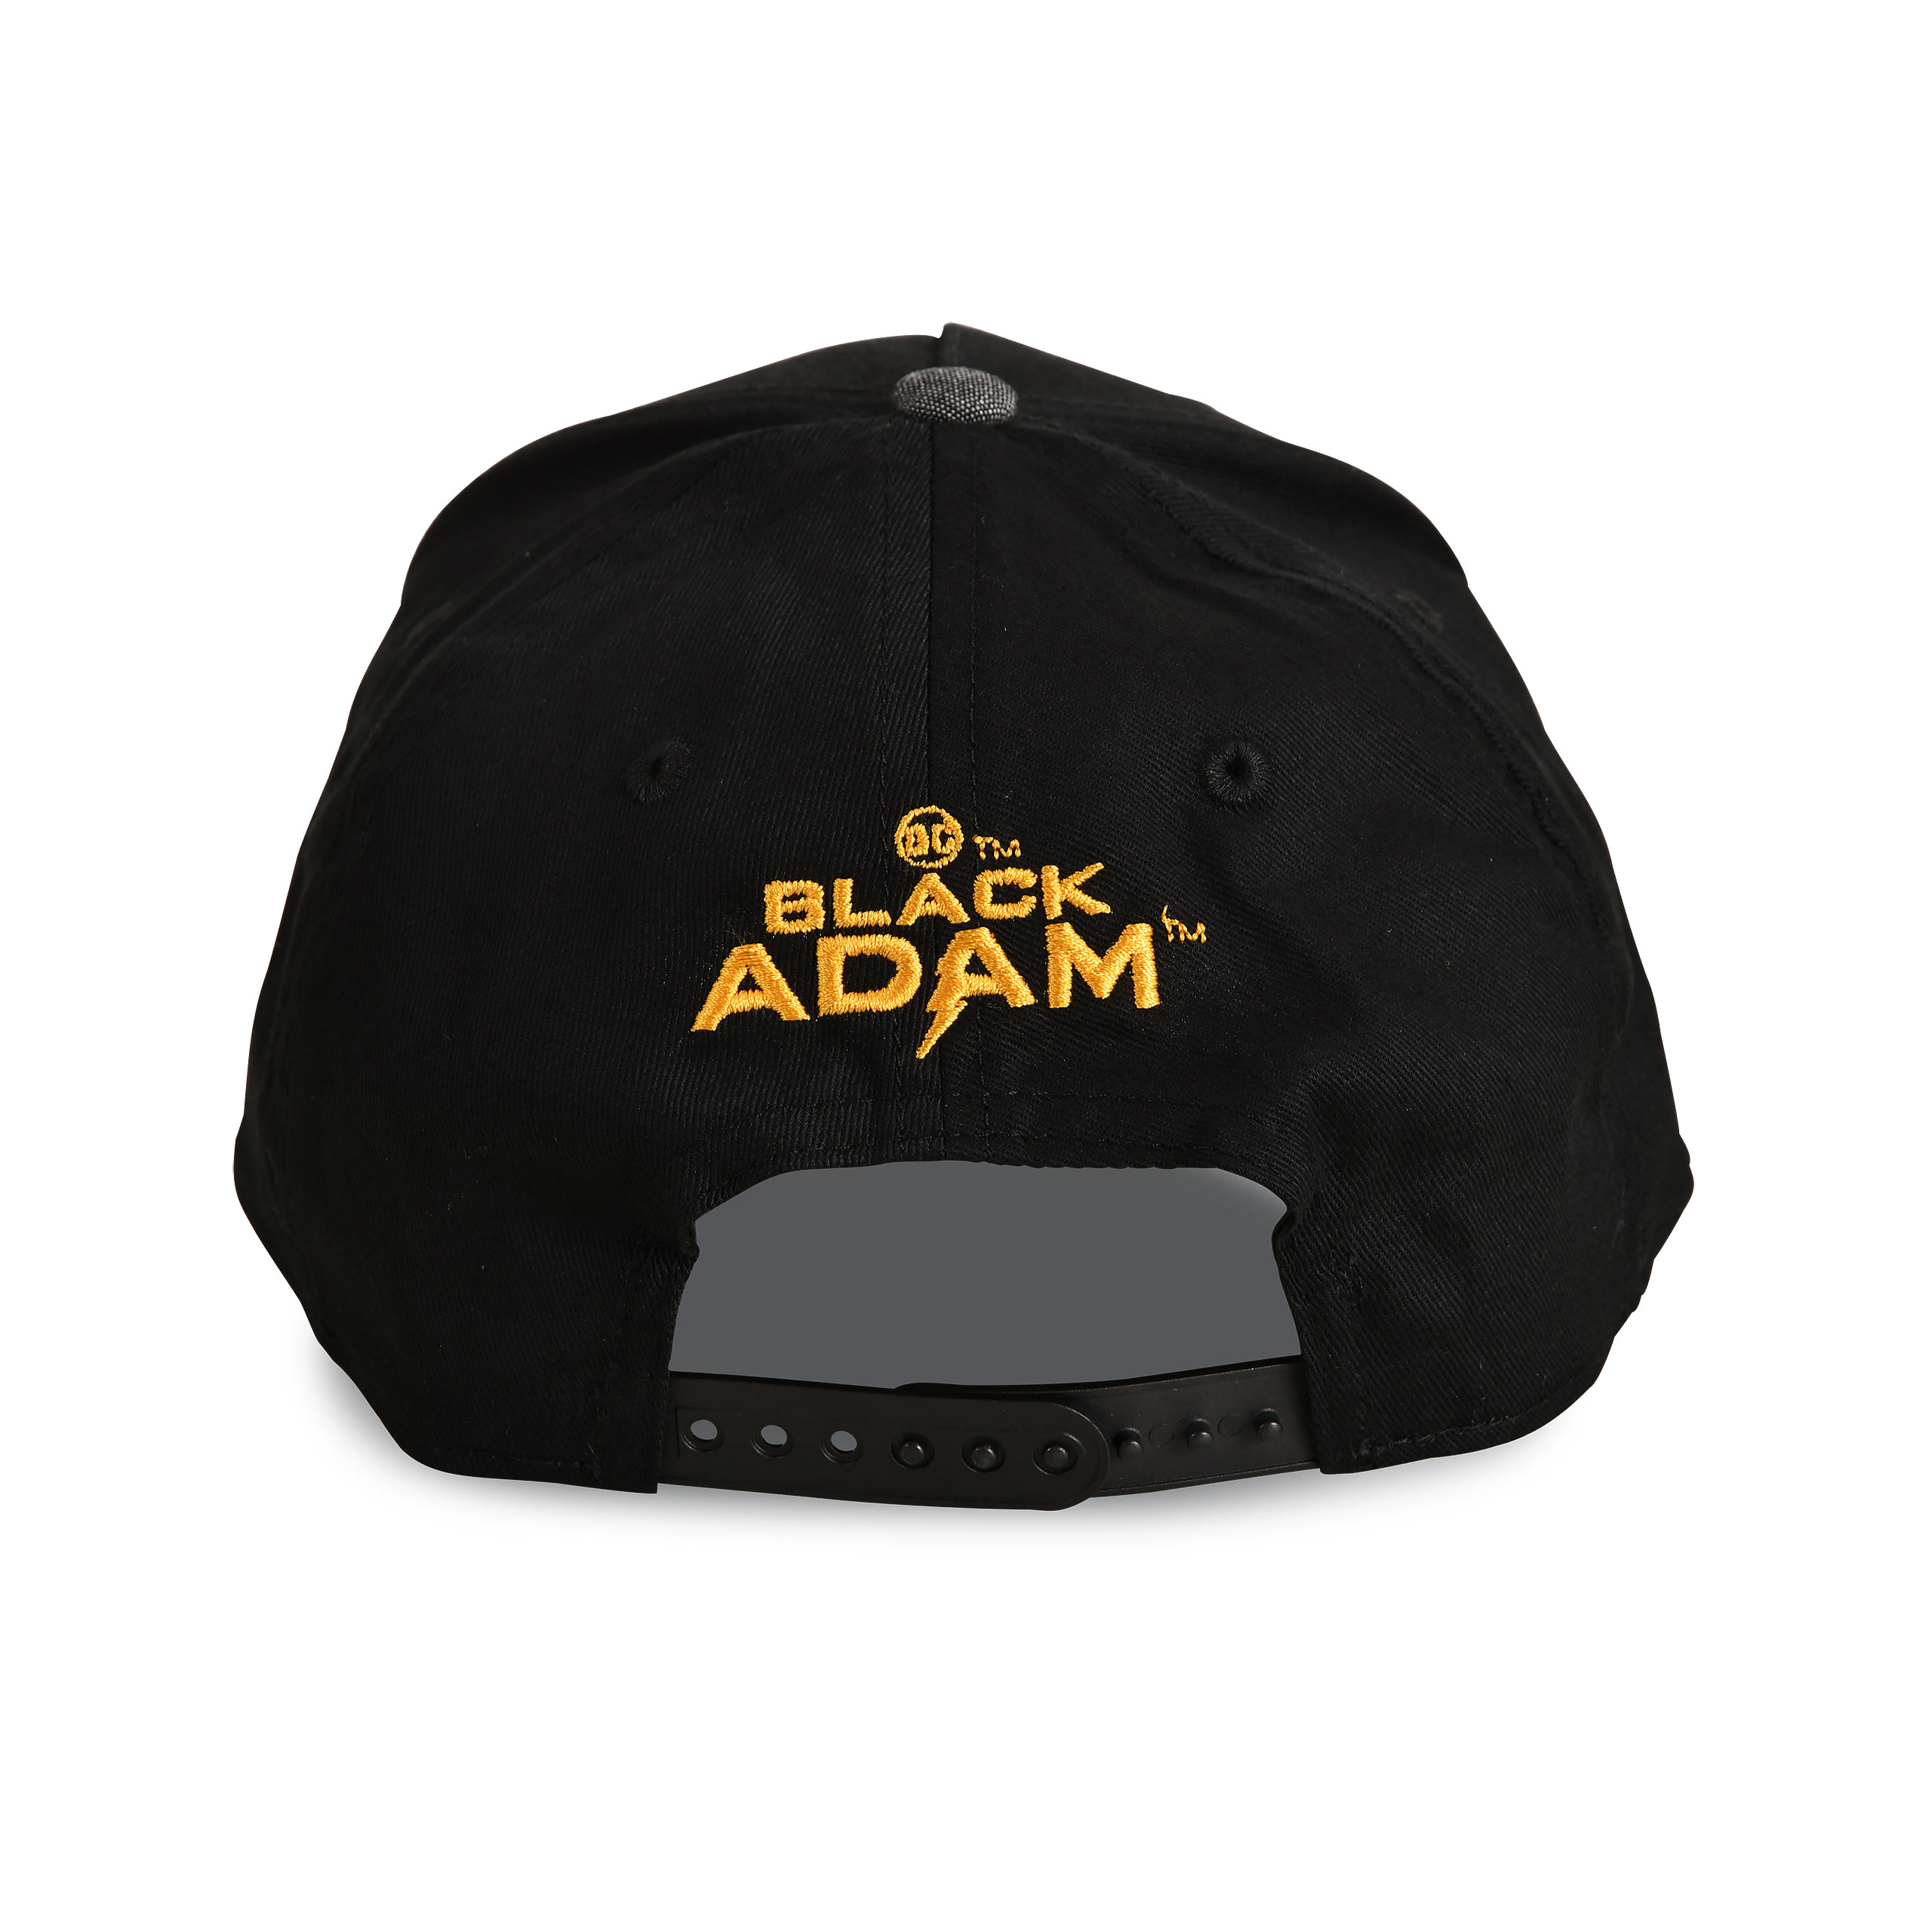 Black Adam - Movie Logo Basecap